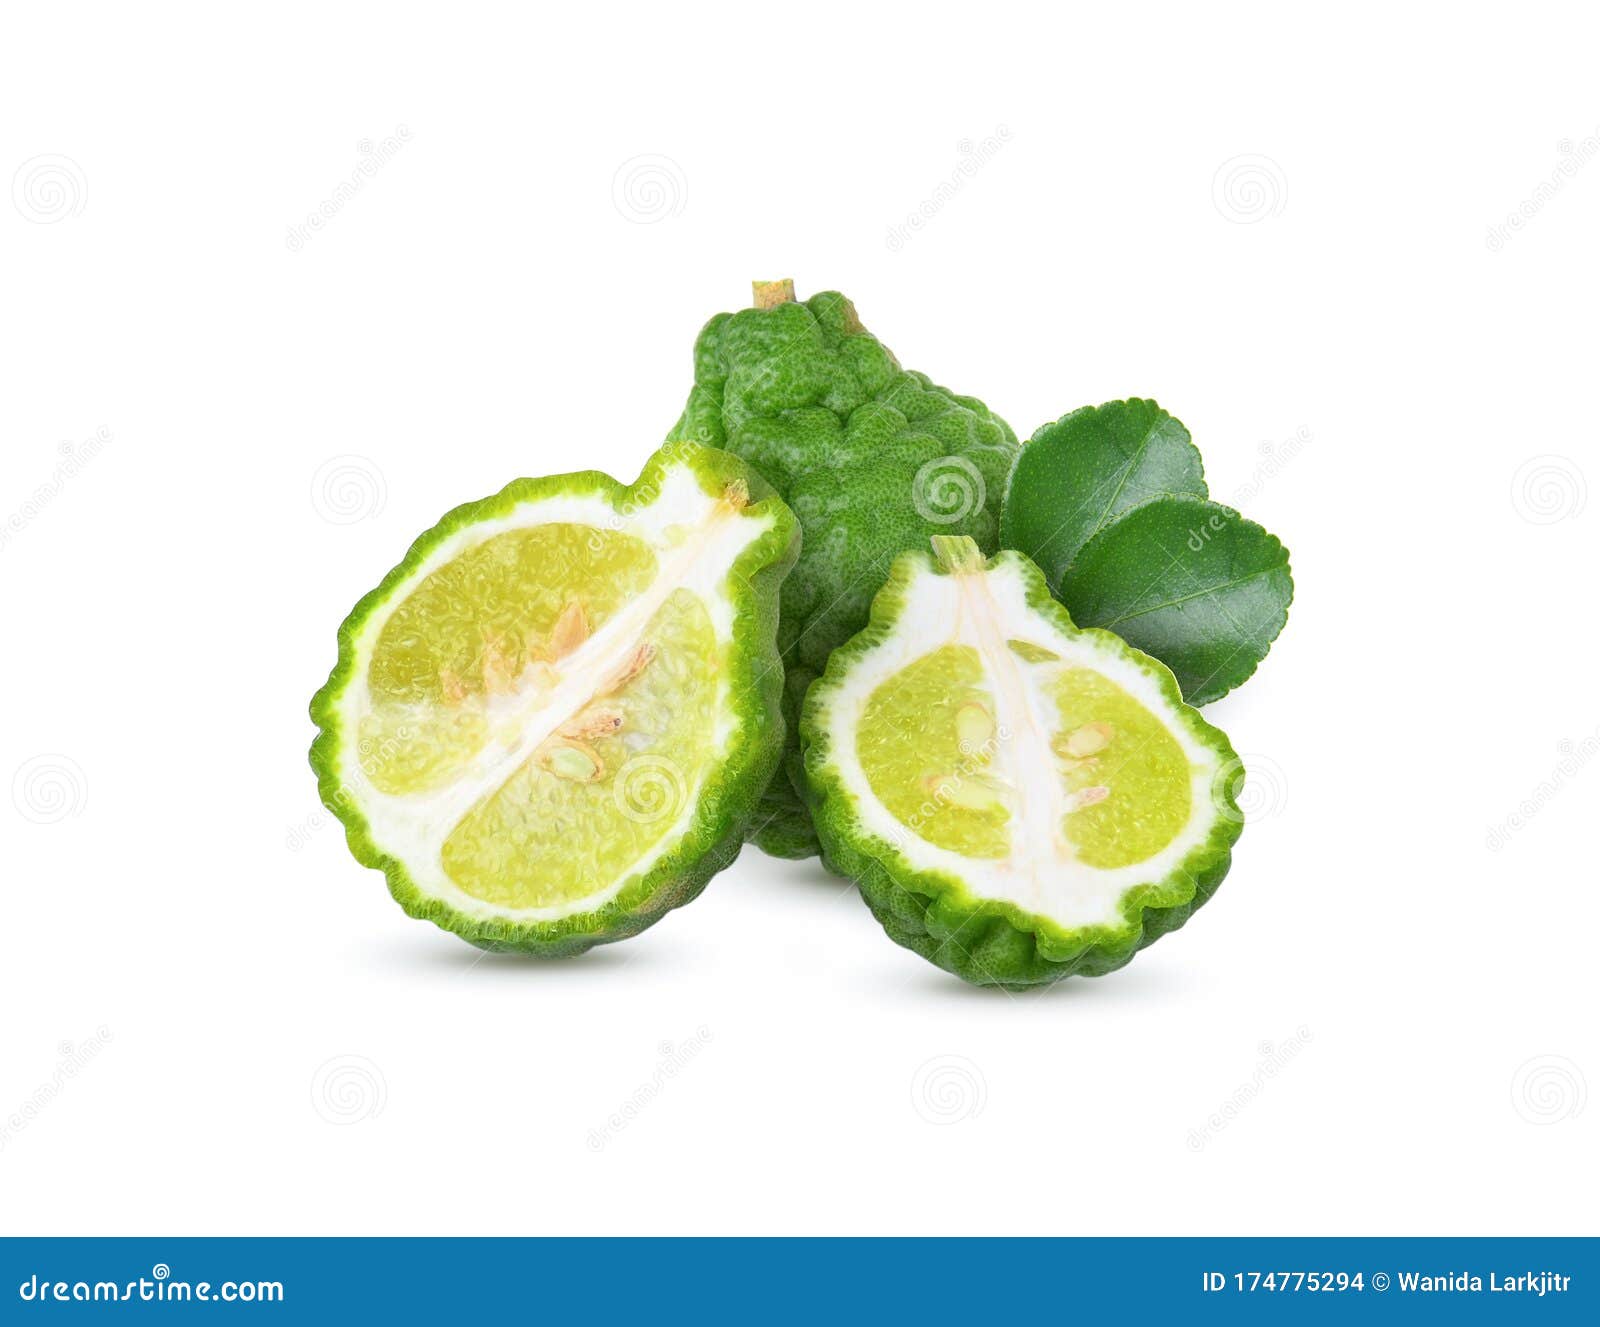 Fresh Bergamot Fruit With Leaf On White Background Stock Photo Image Of White Herbal 174775294